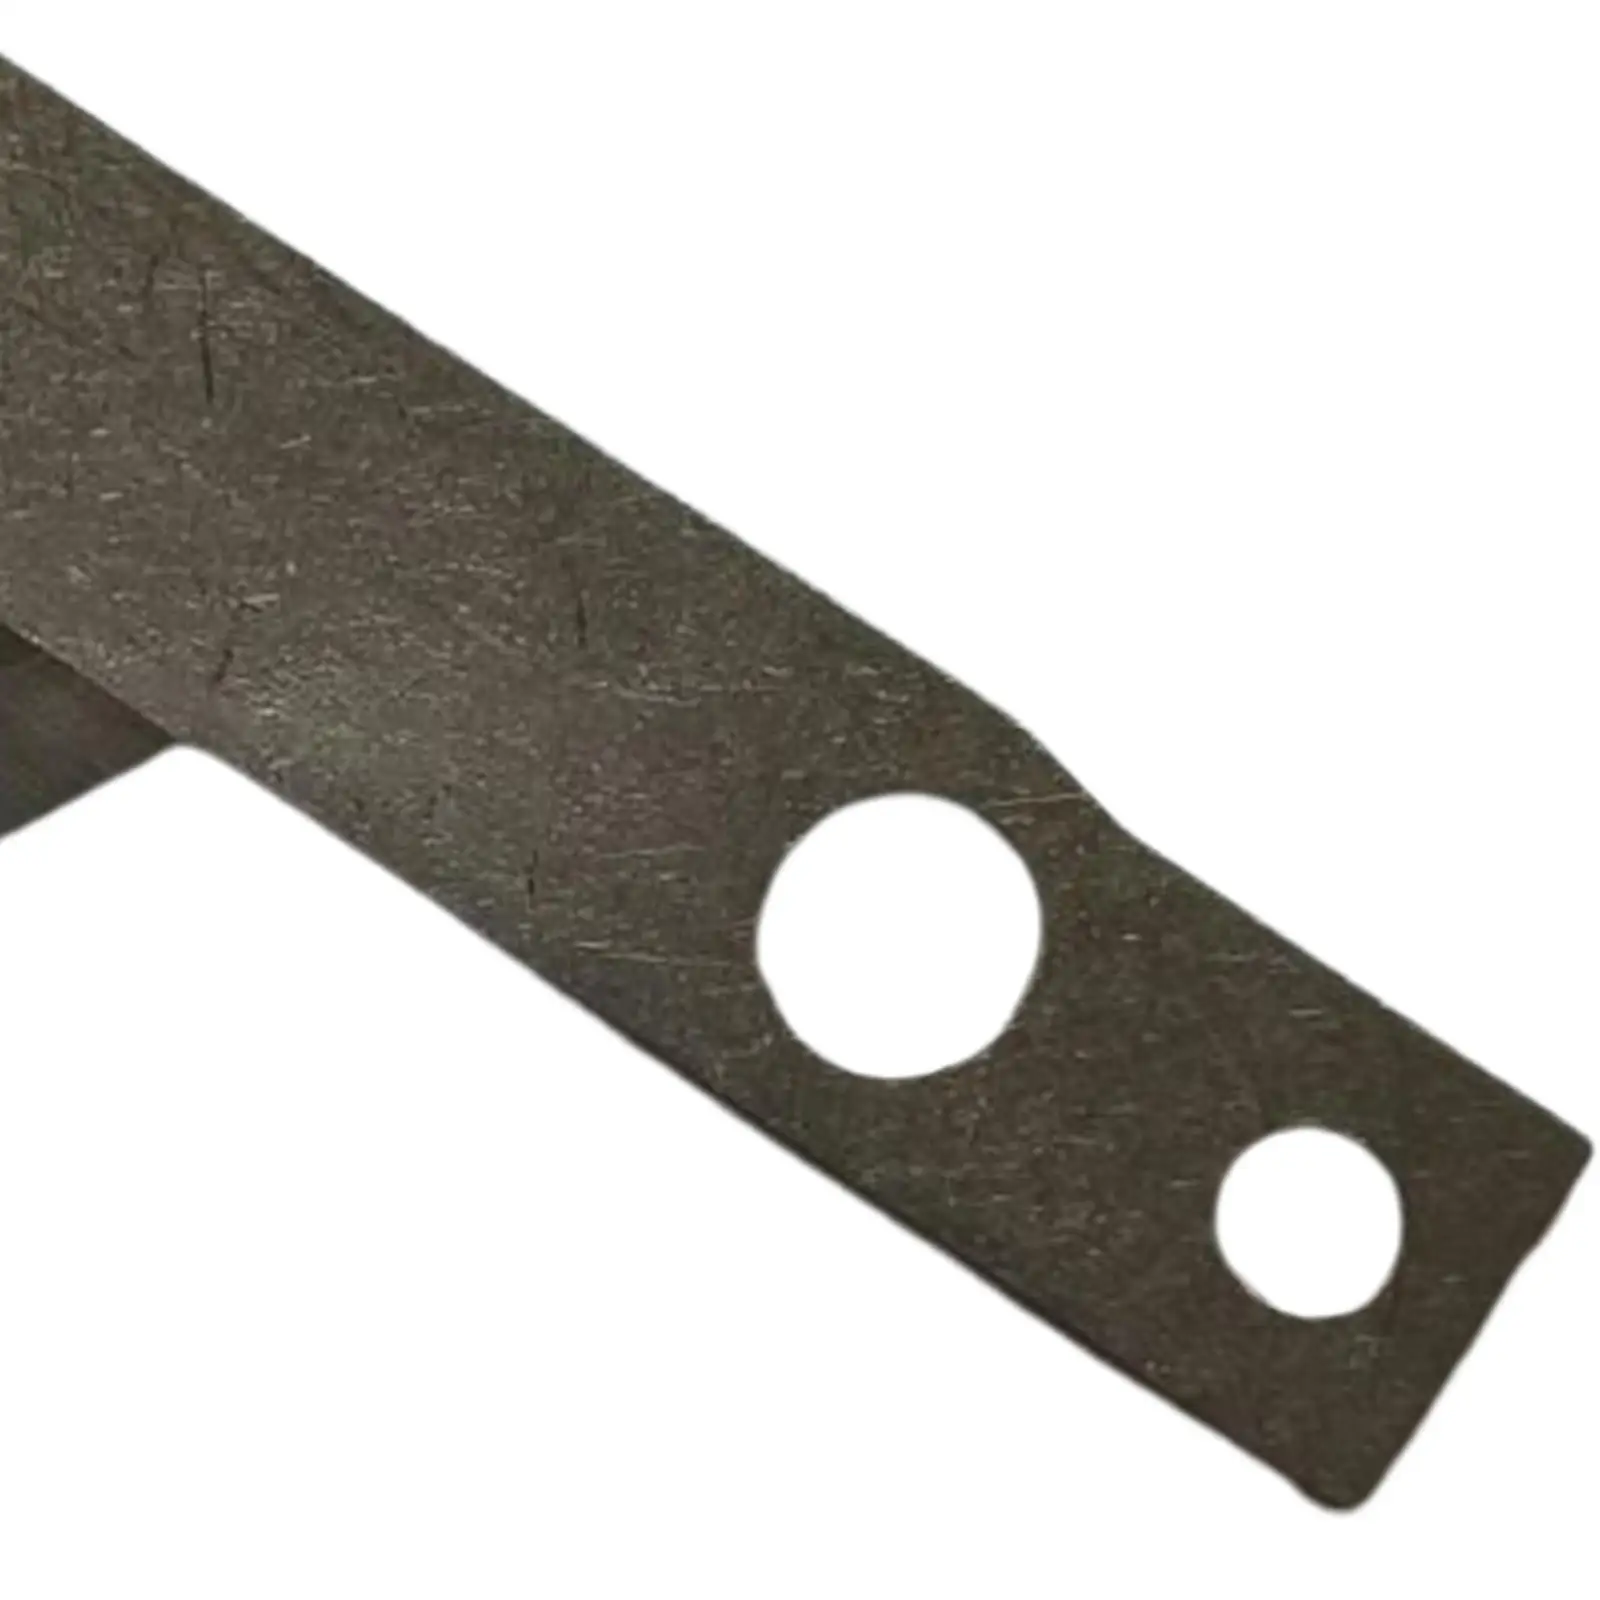 Lower Carbide Blade Replacement Sturdy Steel Serger Overlocker Machine Blade